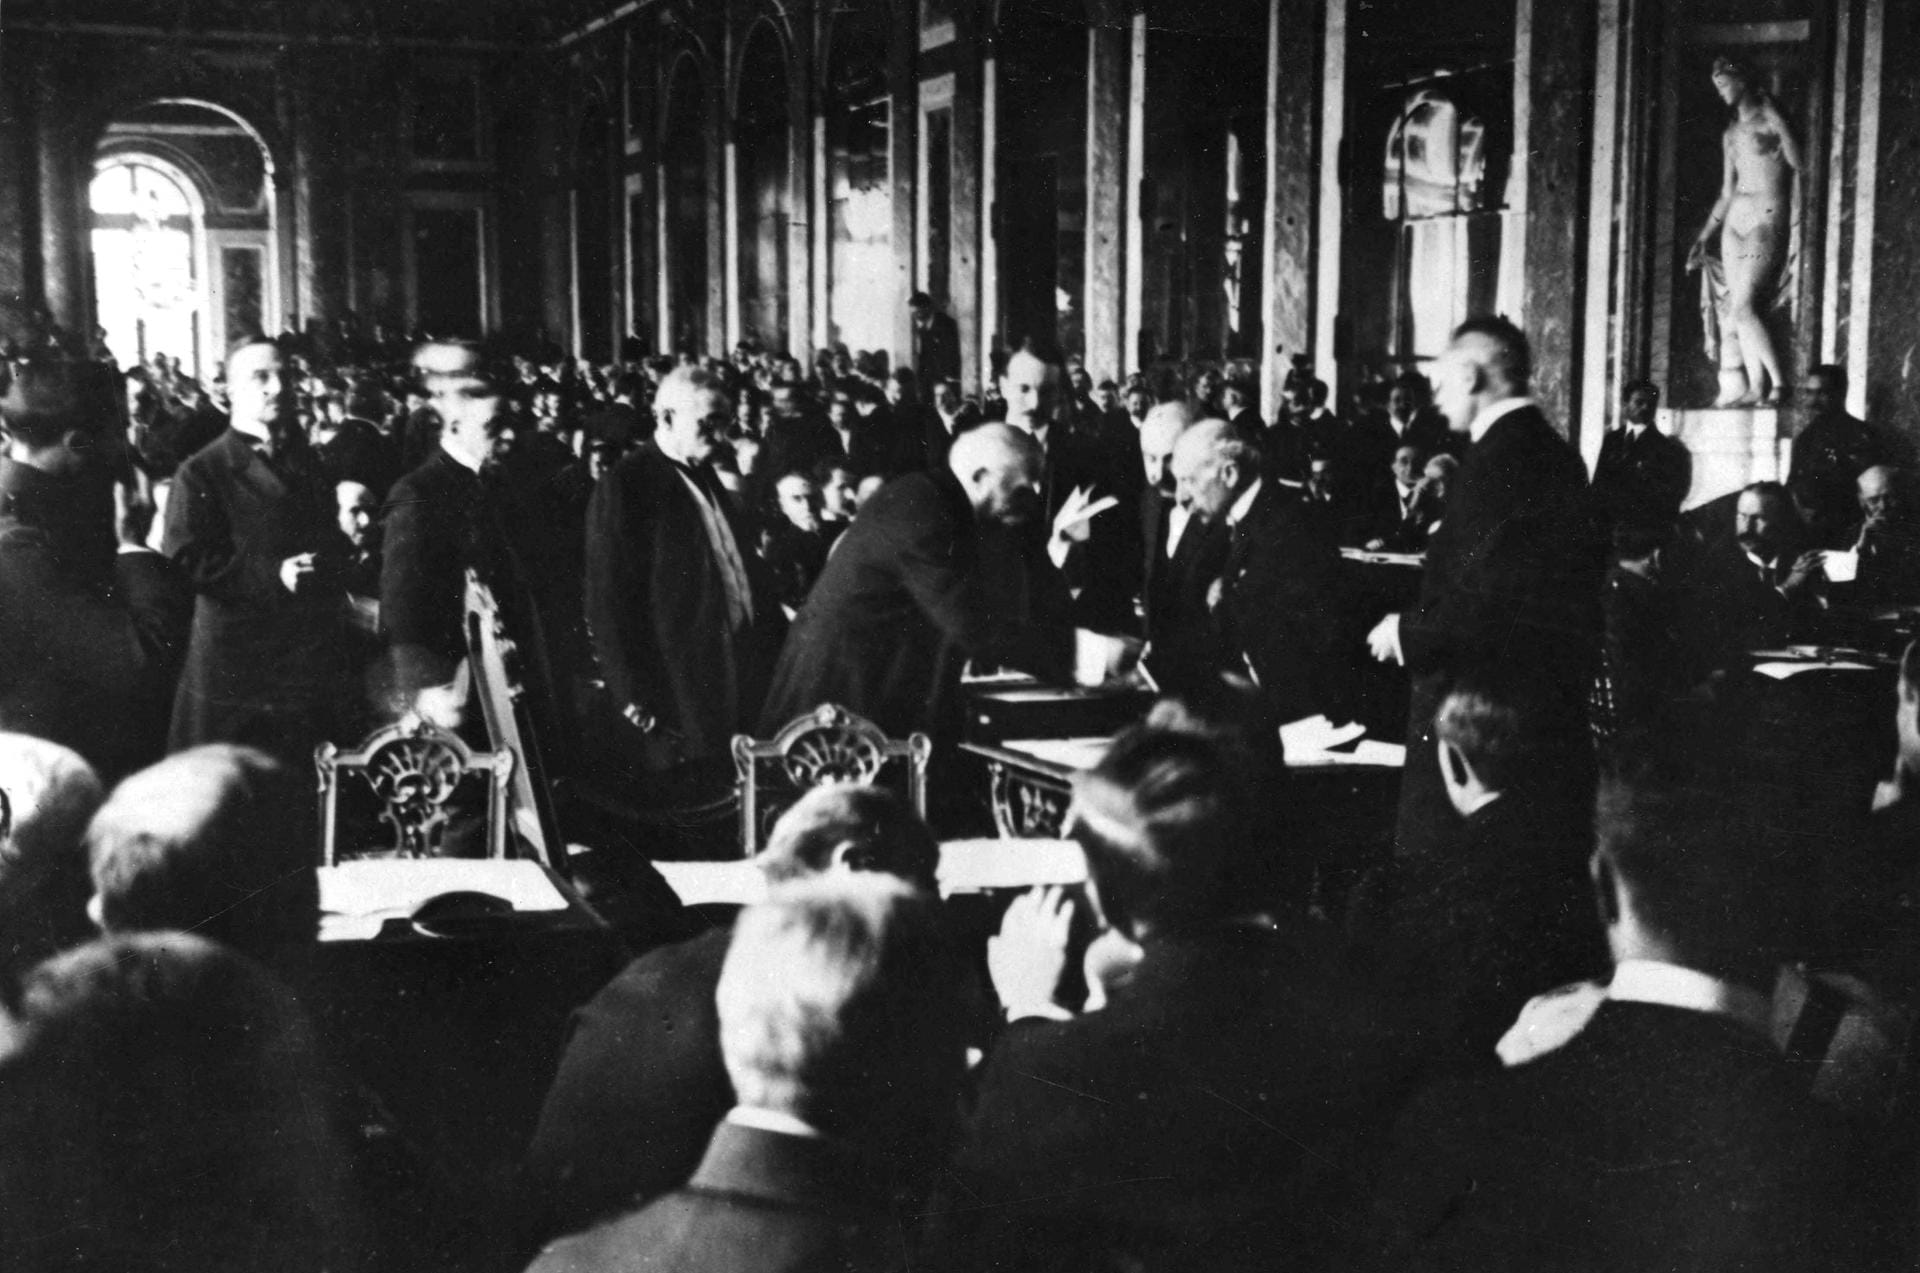 Bei der Pariser Friedenskonferenz wird 1919 dann der Friedensvertrag von Versailles vor allem von Frankreich, Großbritannien und den USA ausgearbeitet. Mit seiner Unterzeichnung endet der Erste Weltkrieg auch offiziell, der Völkerbund wird begründet. Deutschlands muss die alleinige Verantwortung für den Kriegsausbruch übernehmen.